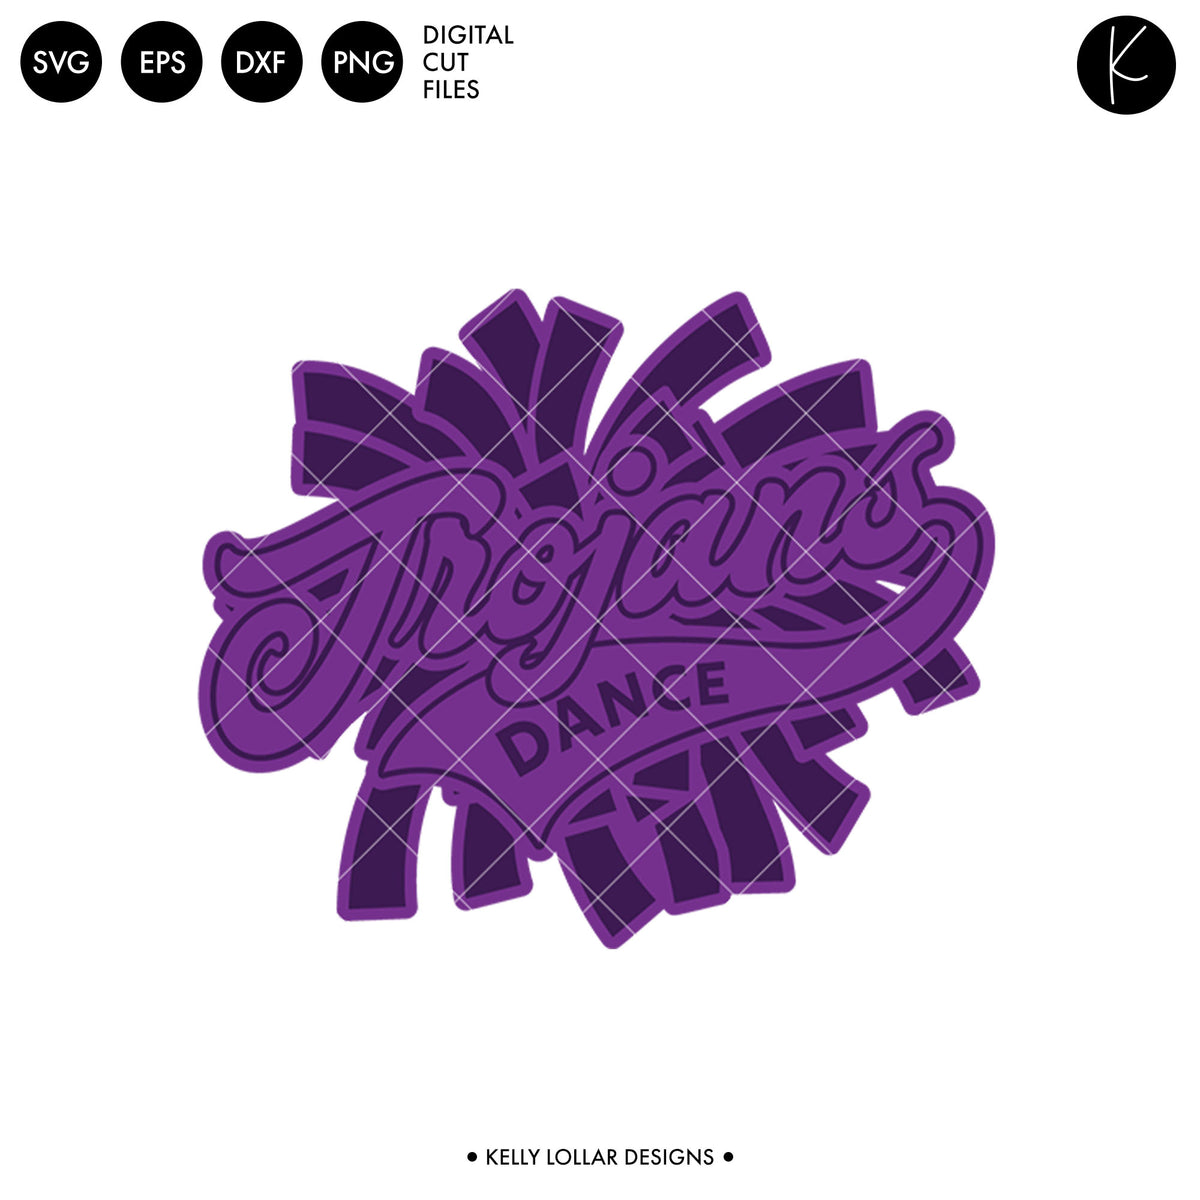 Trojans Dance Bundle | SVG DXF EPS PNG Cut Files